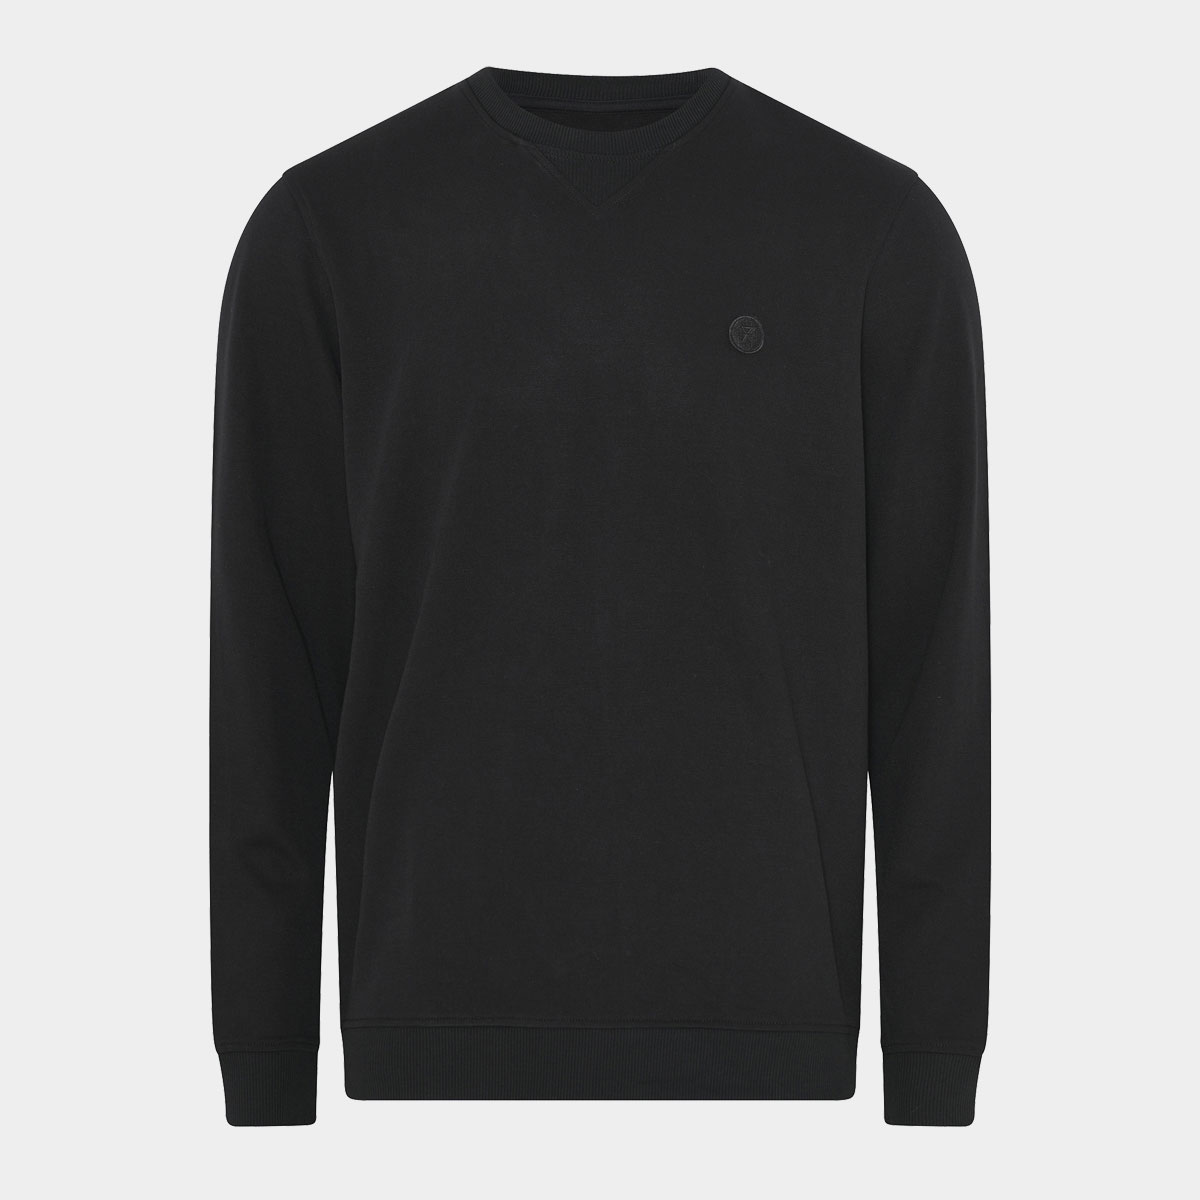 Billede af Bambus sweatshirt | sort sweatshirt til mænd fra JBS of Denmark, XXL